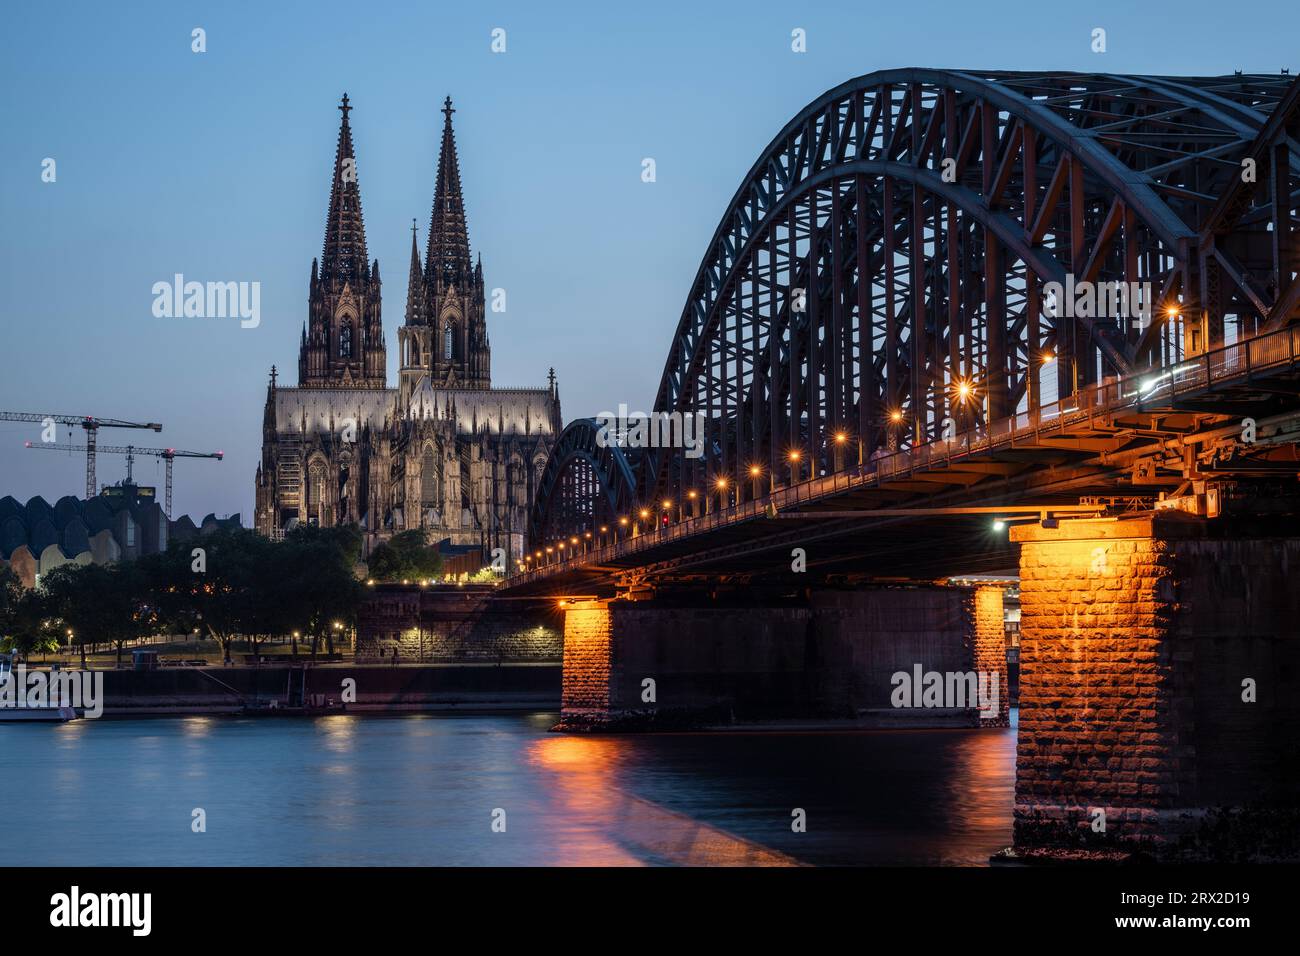 Cathédrale de Cologne, site du patrimoine mondial de l'UNESCO, et pont Hohenzollern au crépuscule, Cologne, Rhénanie du Nord-Westphalie, Allemagne, Europe Banque D'Images